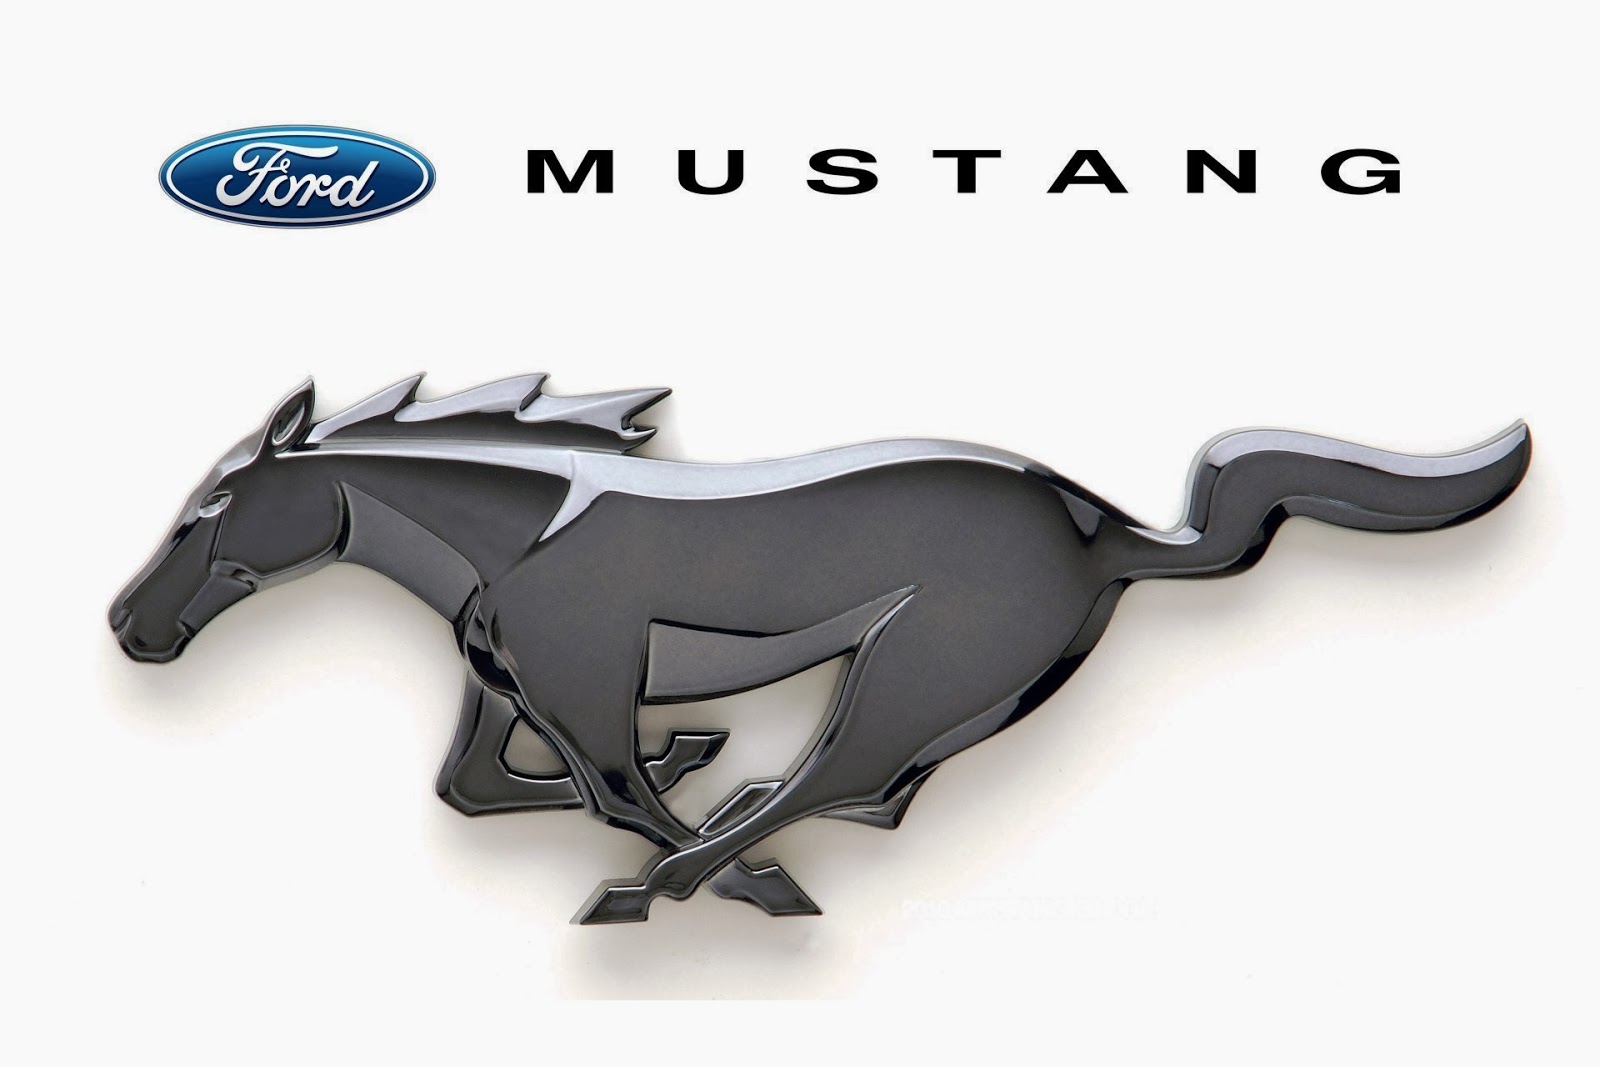 Ford Mustang Logo, Mustang Car Symbol and History 